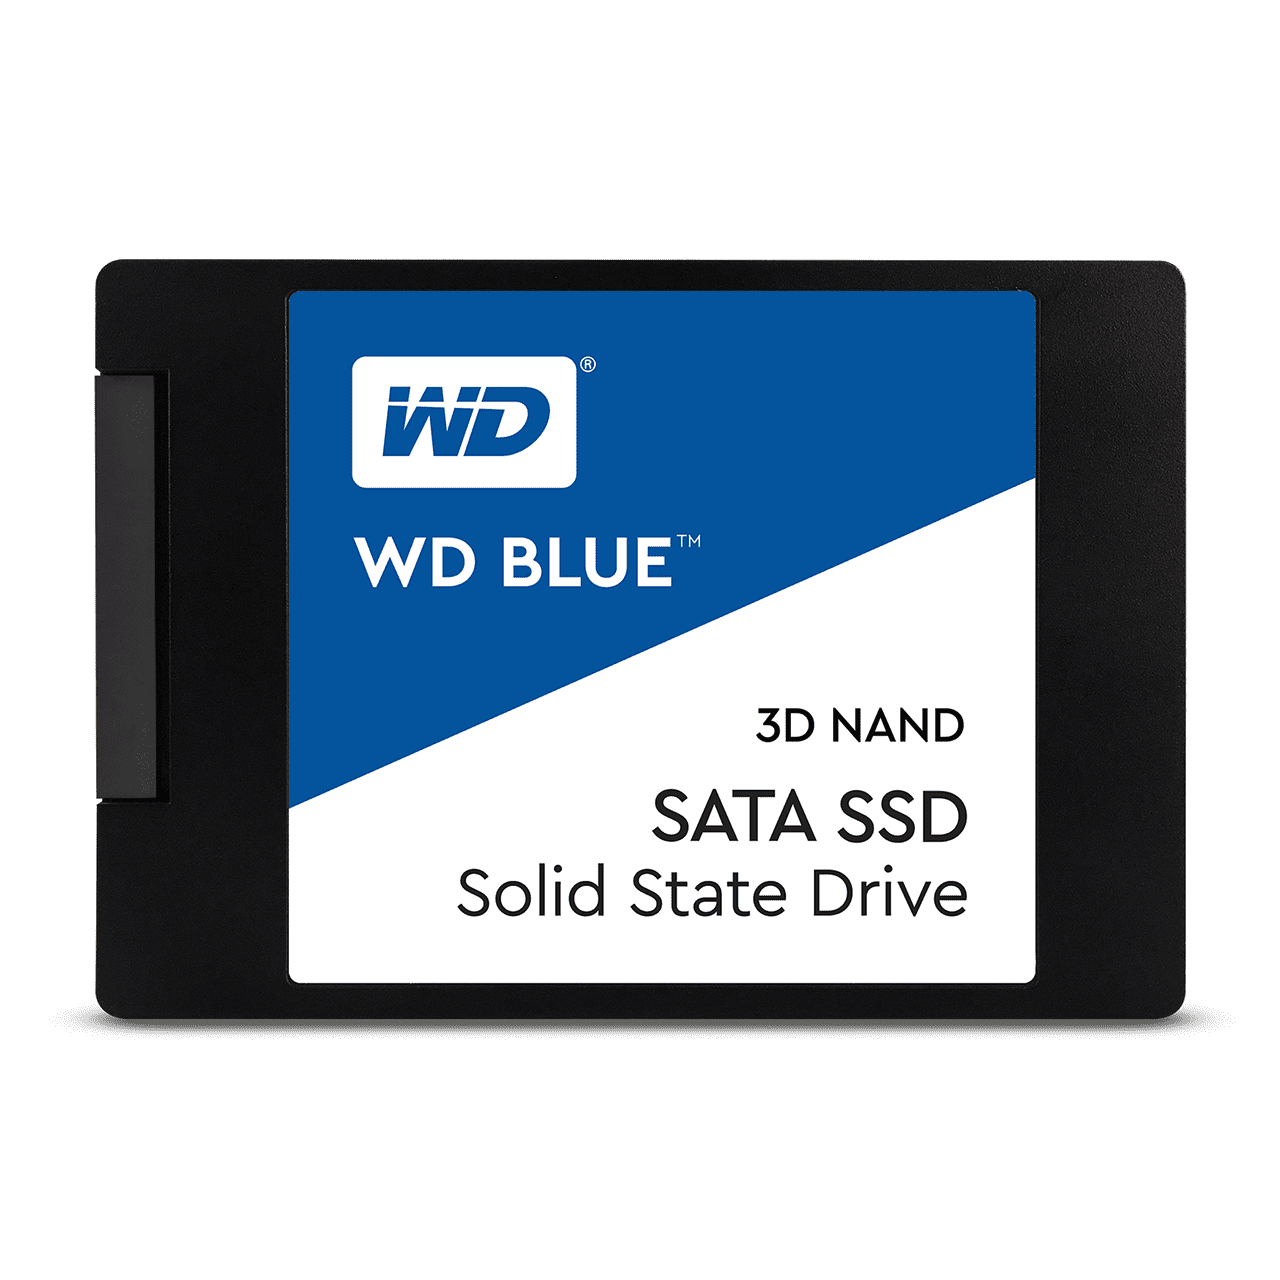 WD Blue 500GB 3D NAND SATA SSD 2.5-Inch